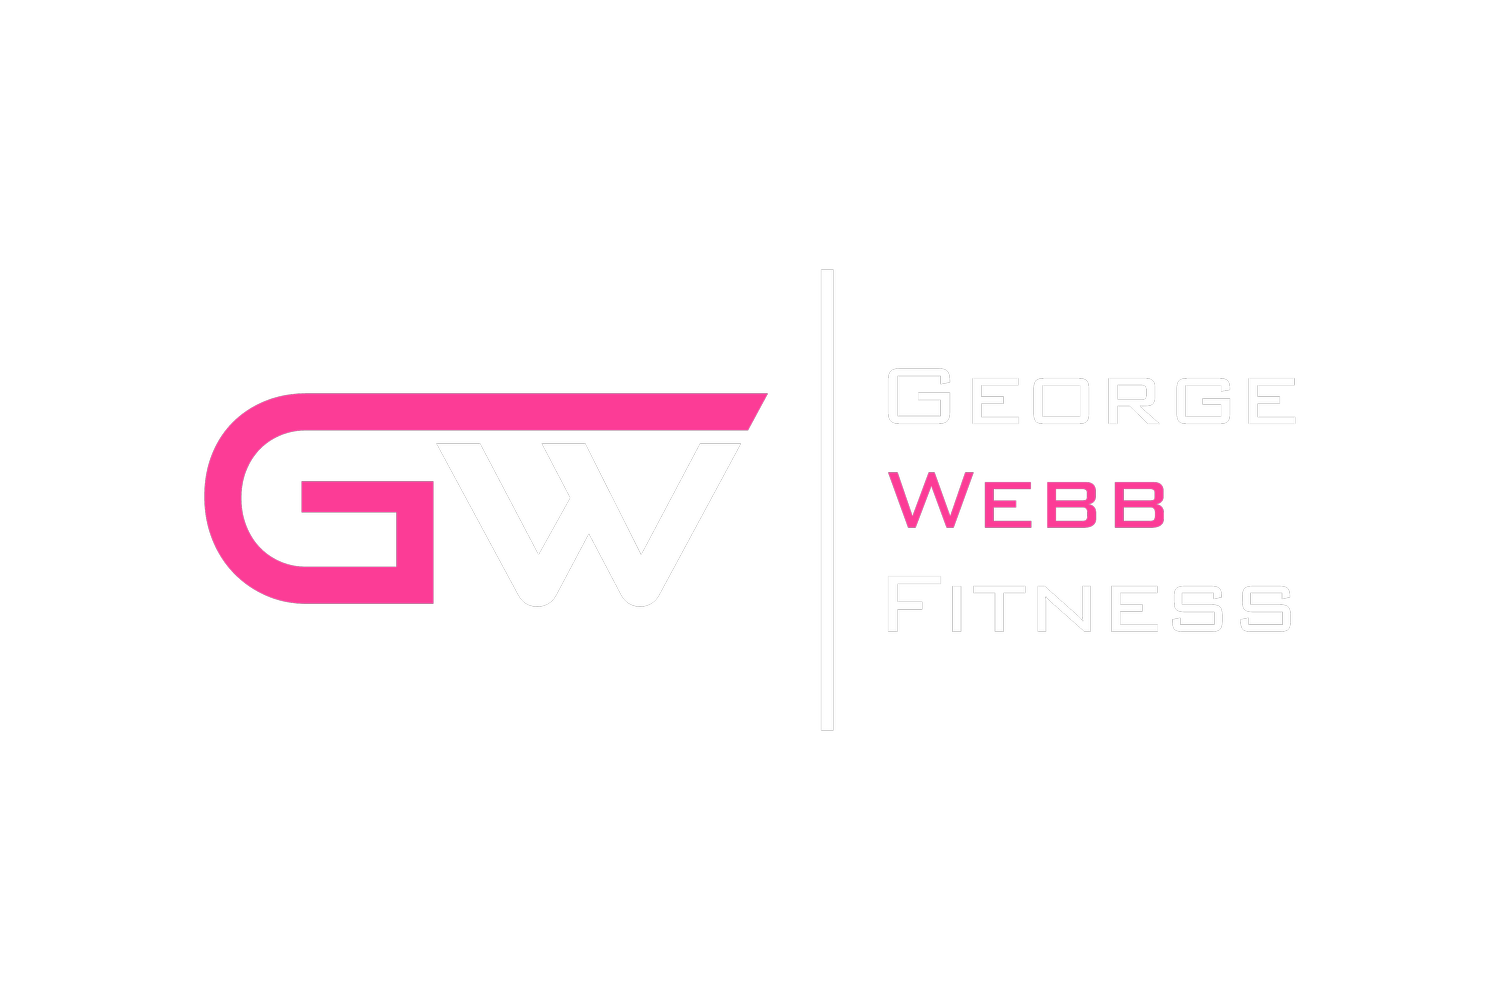 George Webb Fitness